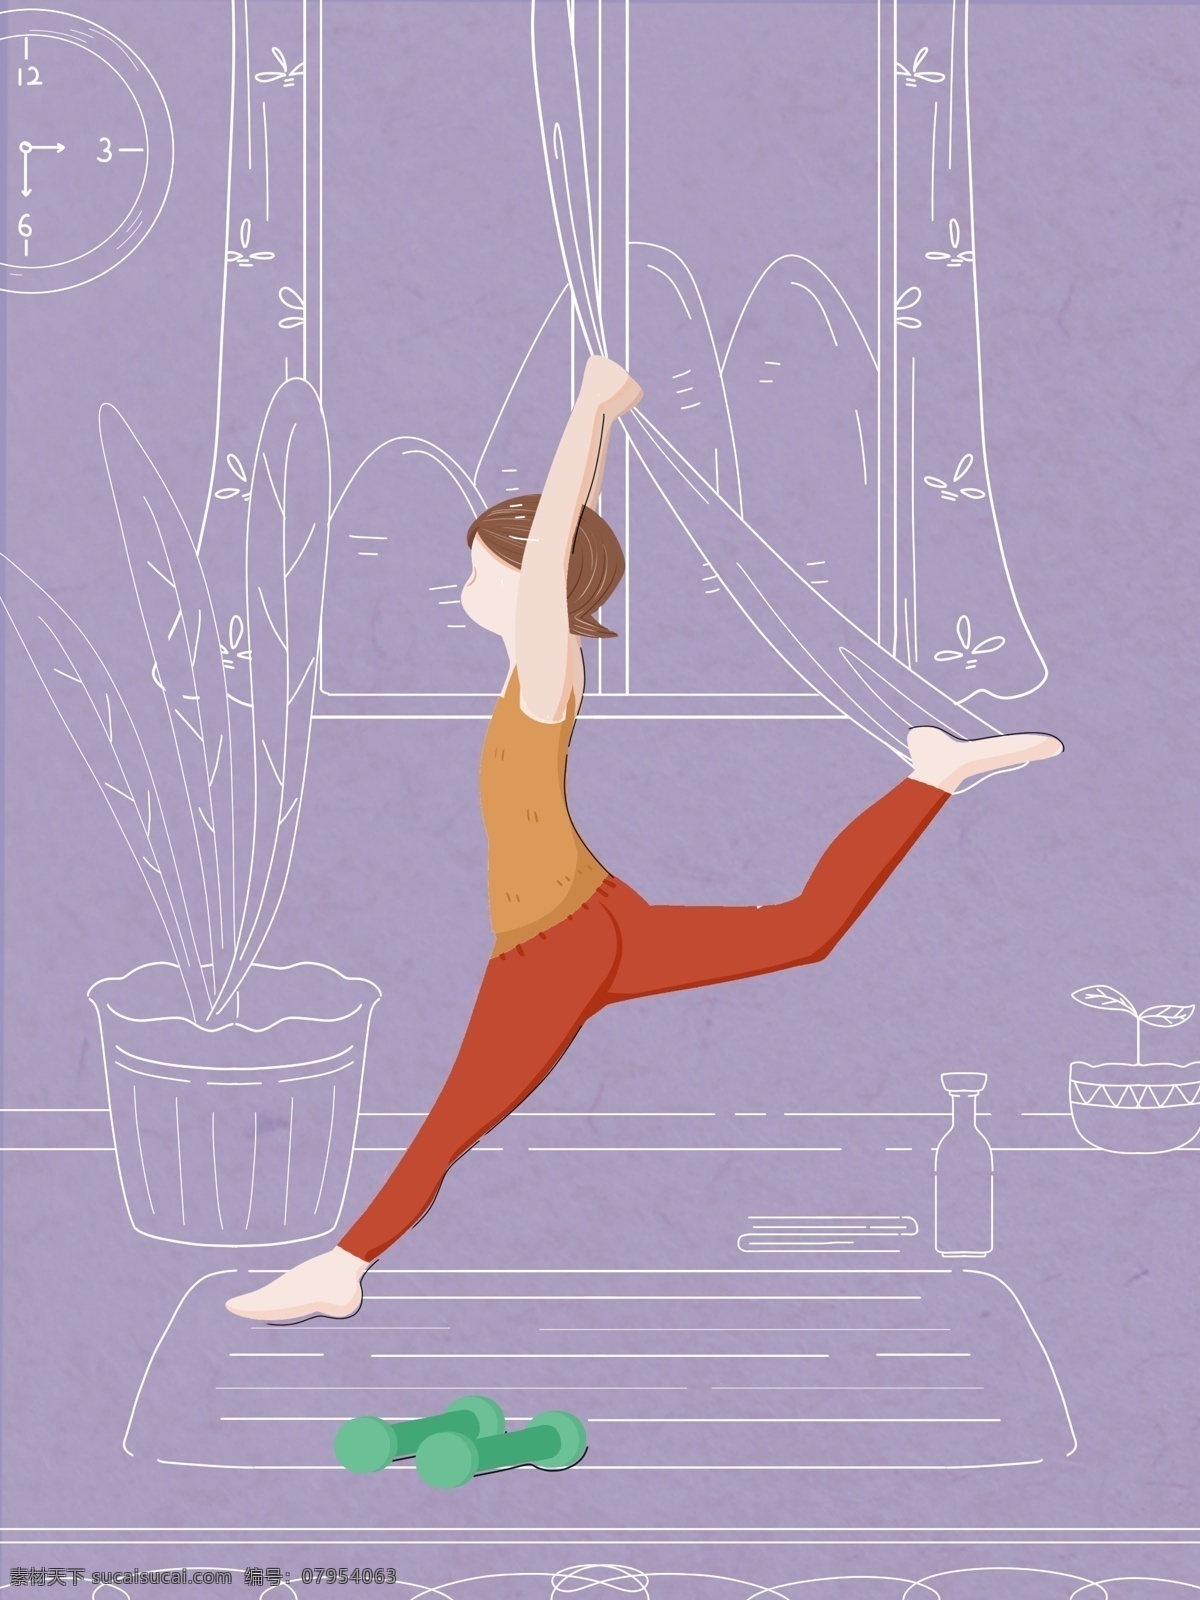 虚实 象生 女孩 练习 瑜伽 温馨 健身 运动 活力 虚实象生 紫色 插画 简约 线条